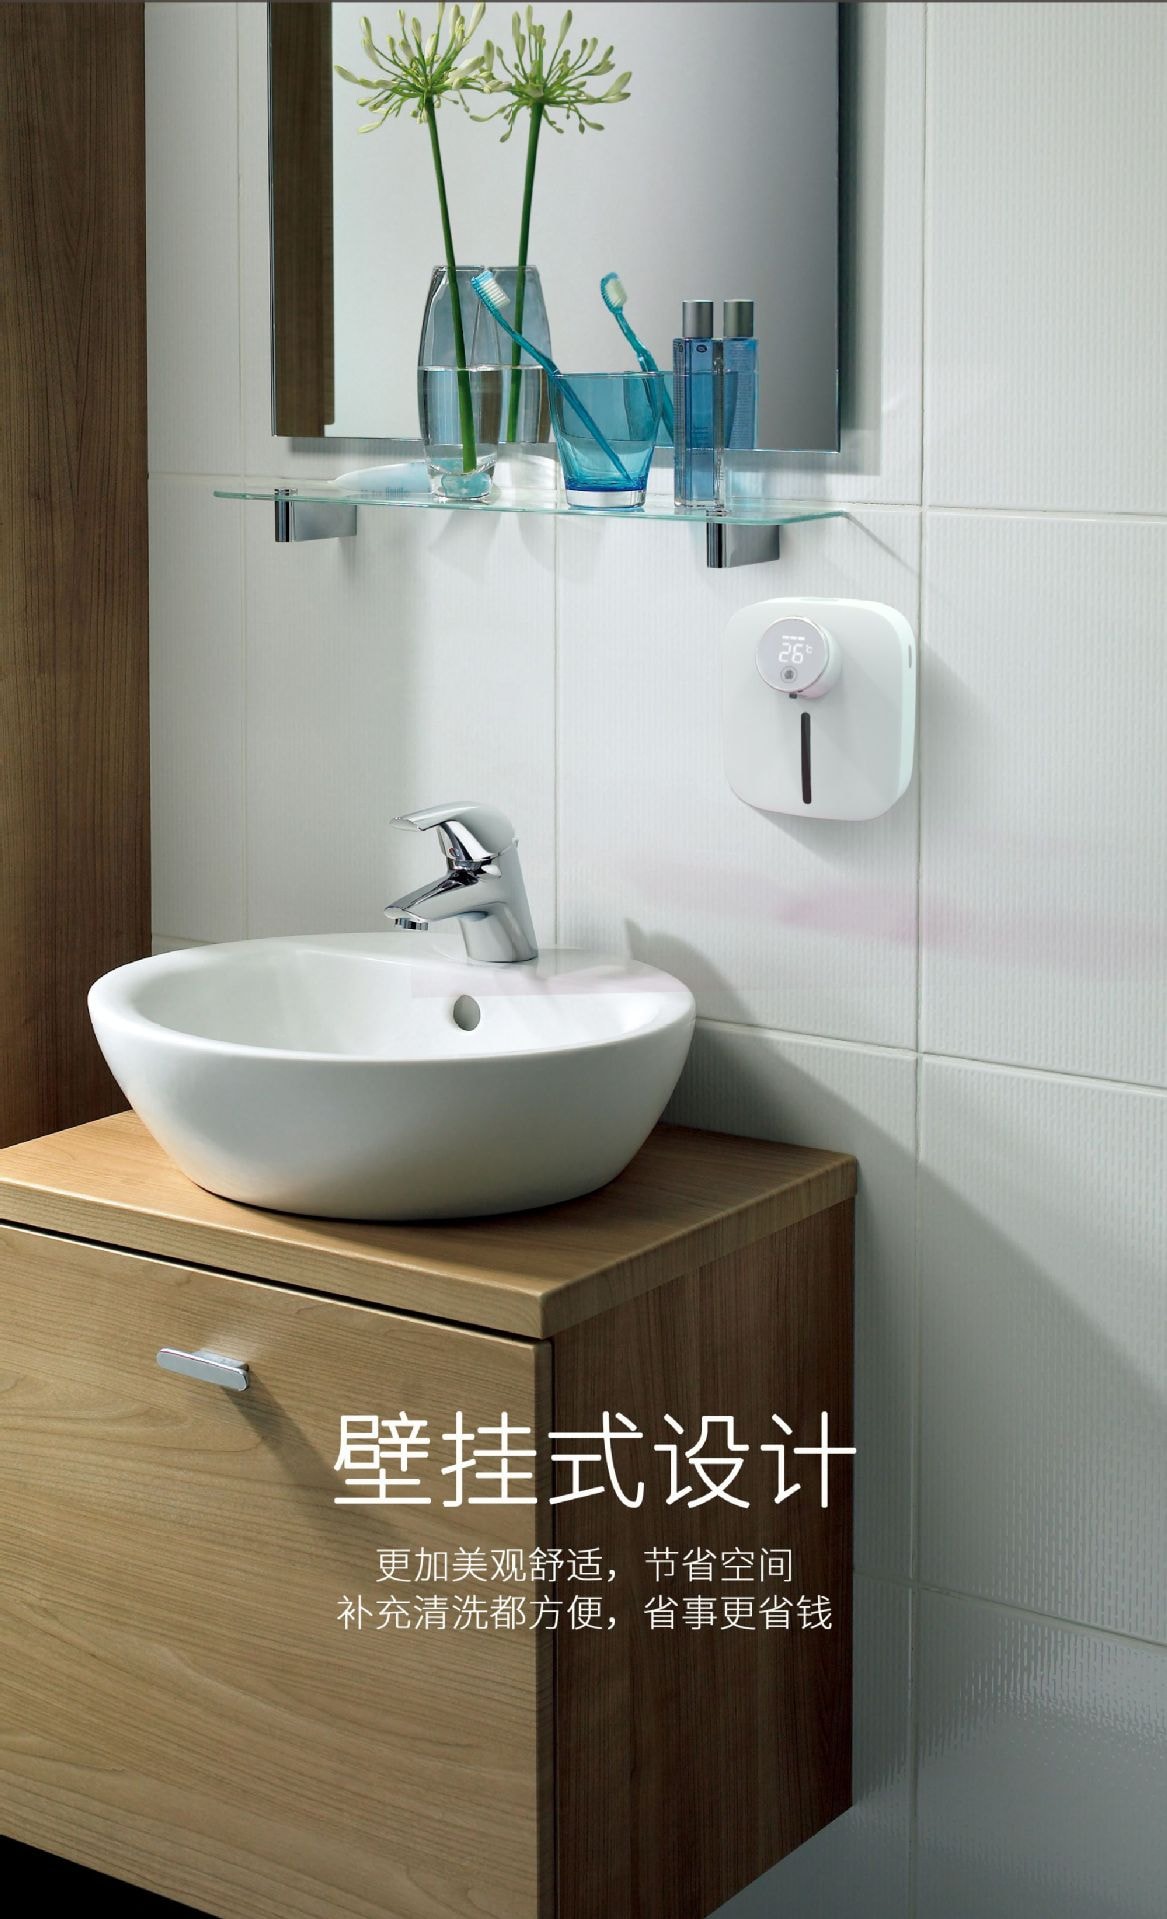 壁掛式自動感應皂液器X101 小型泡沫洗手機 給皂機 USB充電款